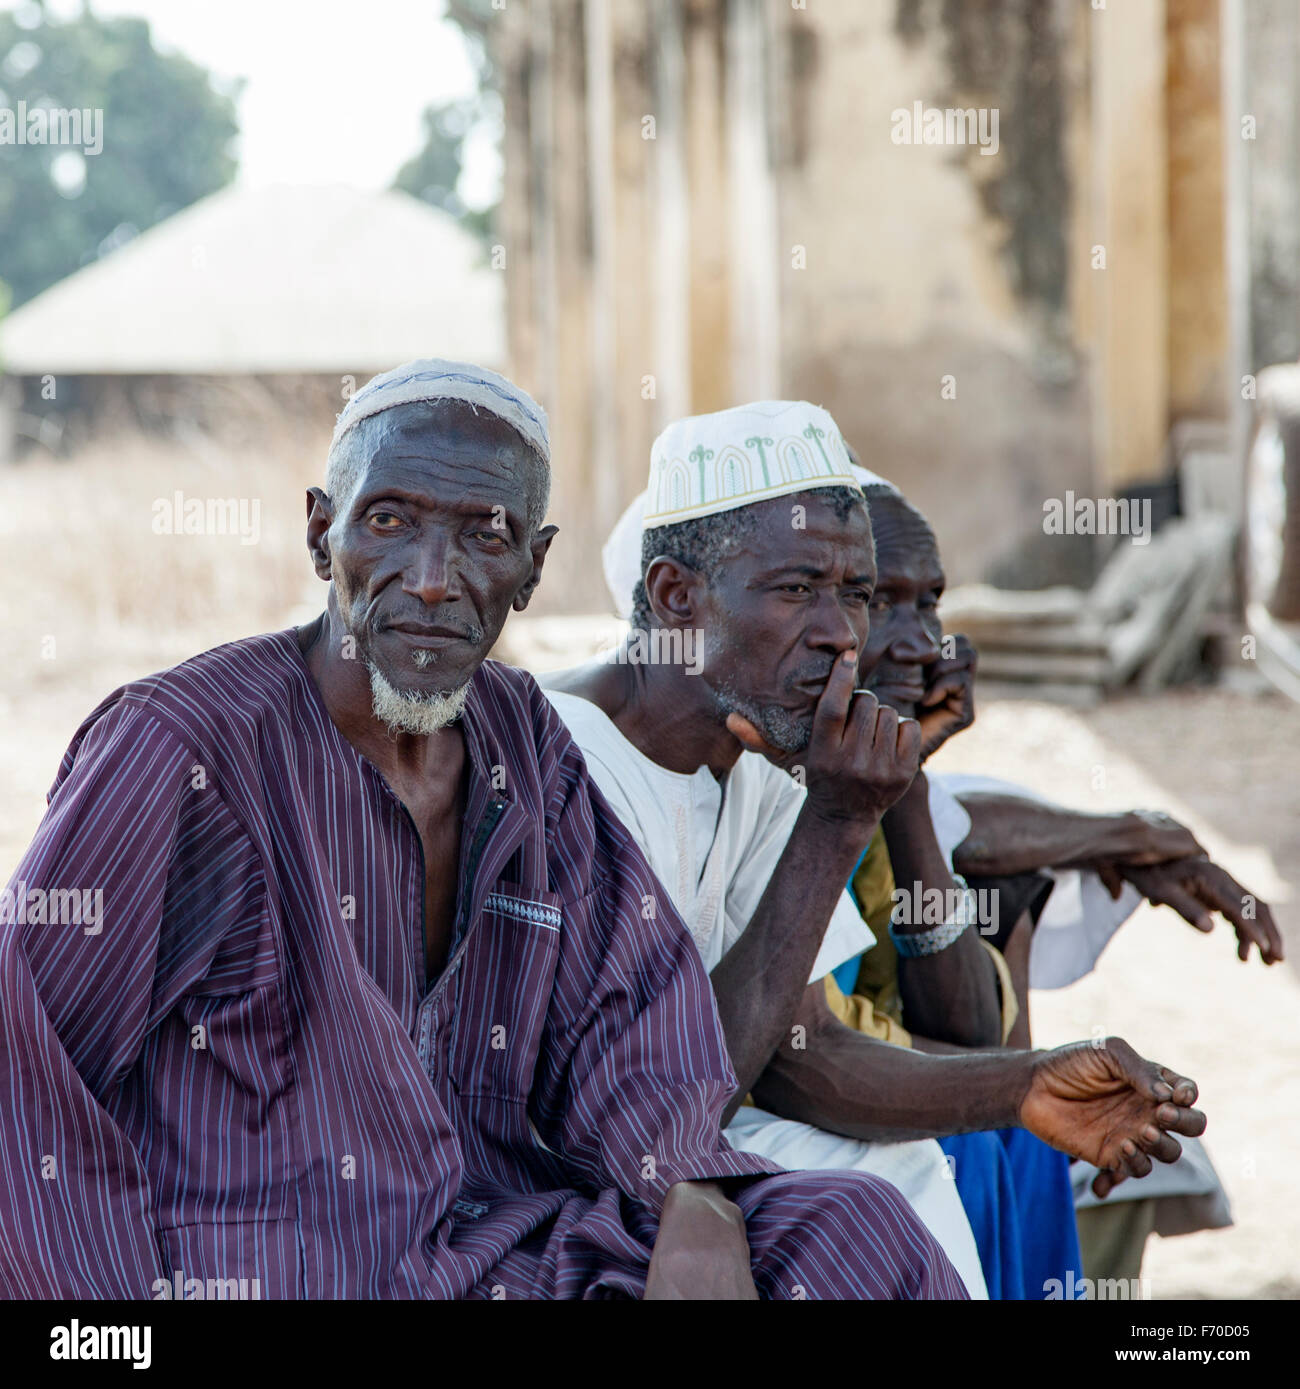 Gabu, Guinea Bissau - 7 Maggio 2014: Ritratto di African gli anziani del villaggio. Scene di vita quotidiana nelle zone rurali la Guinea Bissau. Foto Stock